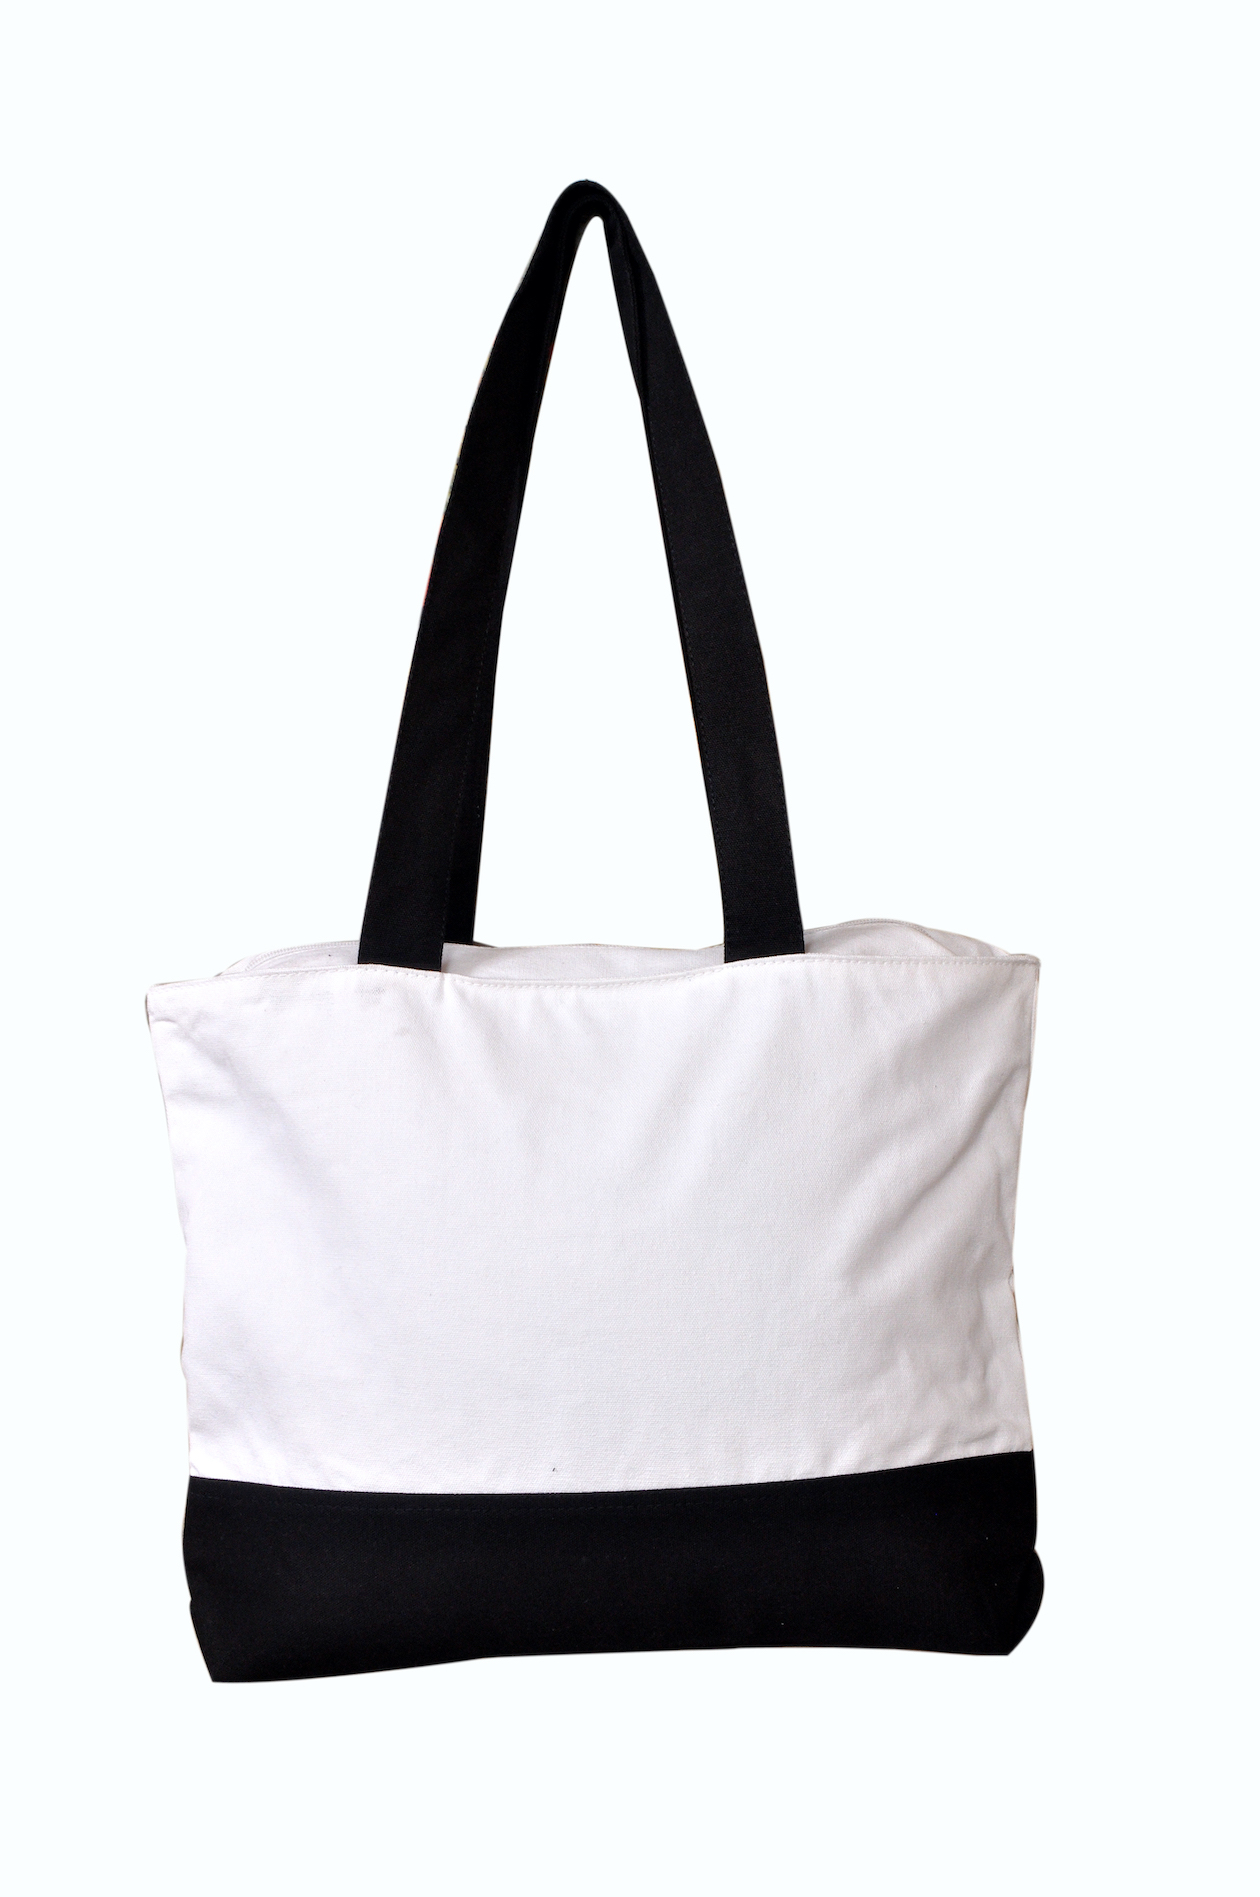 Nylon Tote Bag for Women Shopping Bag Zipper Closure Trendy Lightweight  Large | eBay